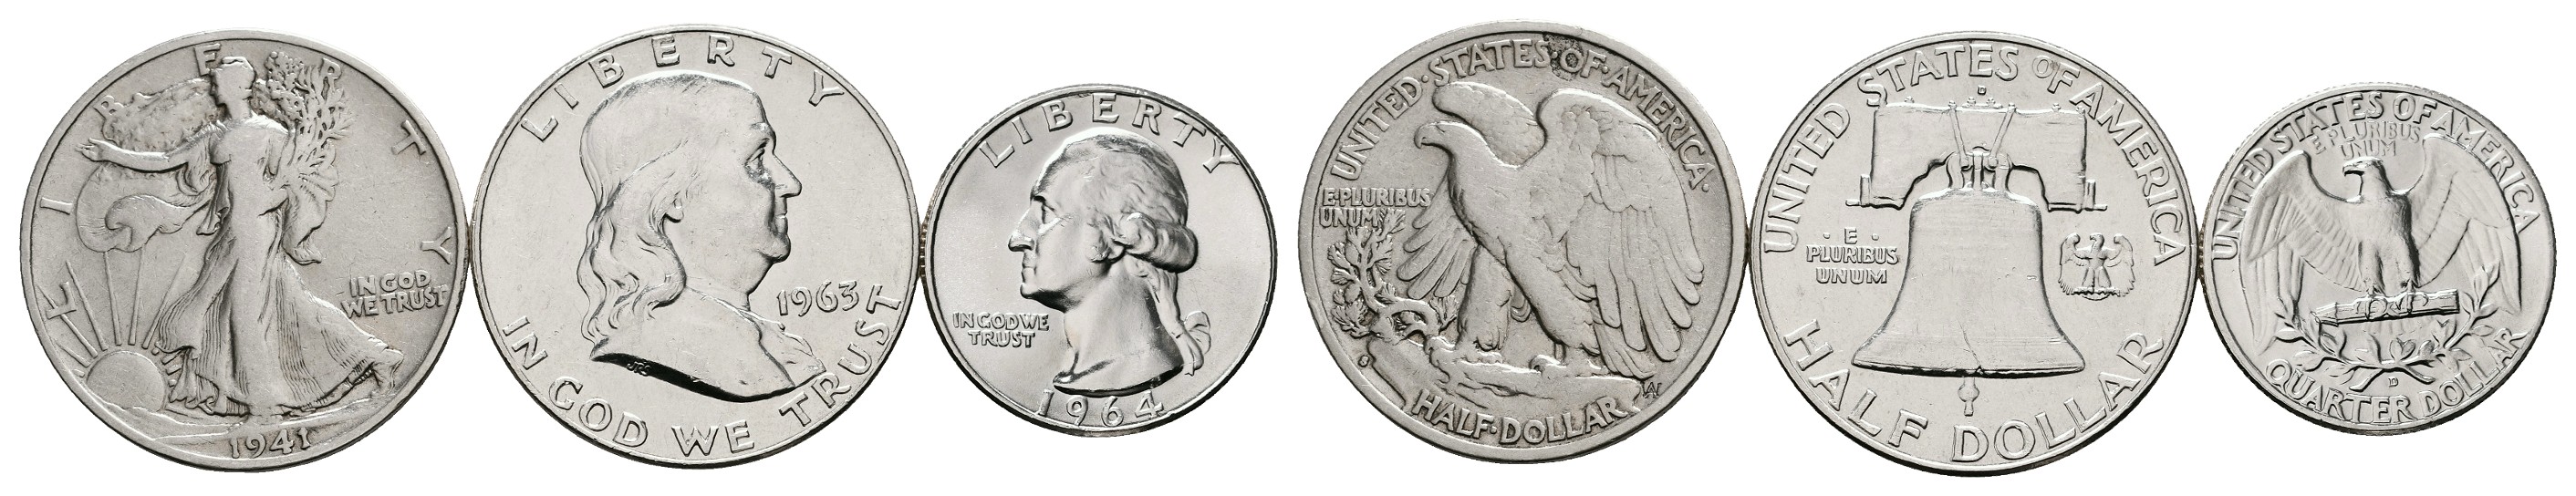  MGS Australien Georg V. 3 Pence 1919 gehenkelt Feingewicht: 1,3g   